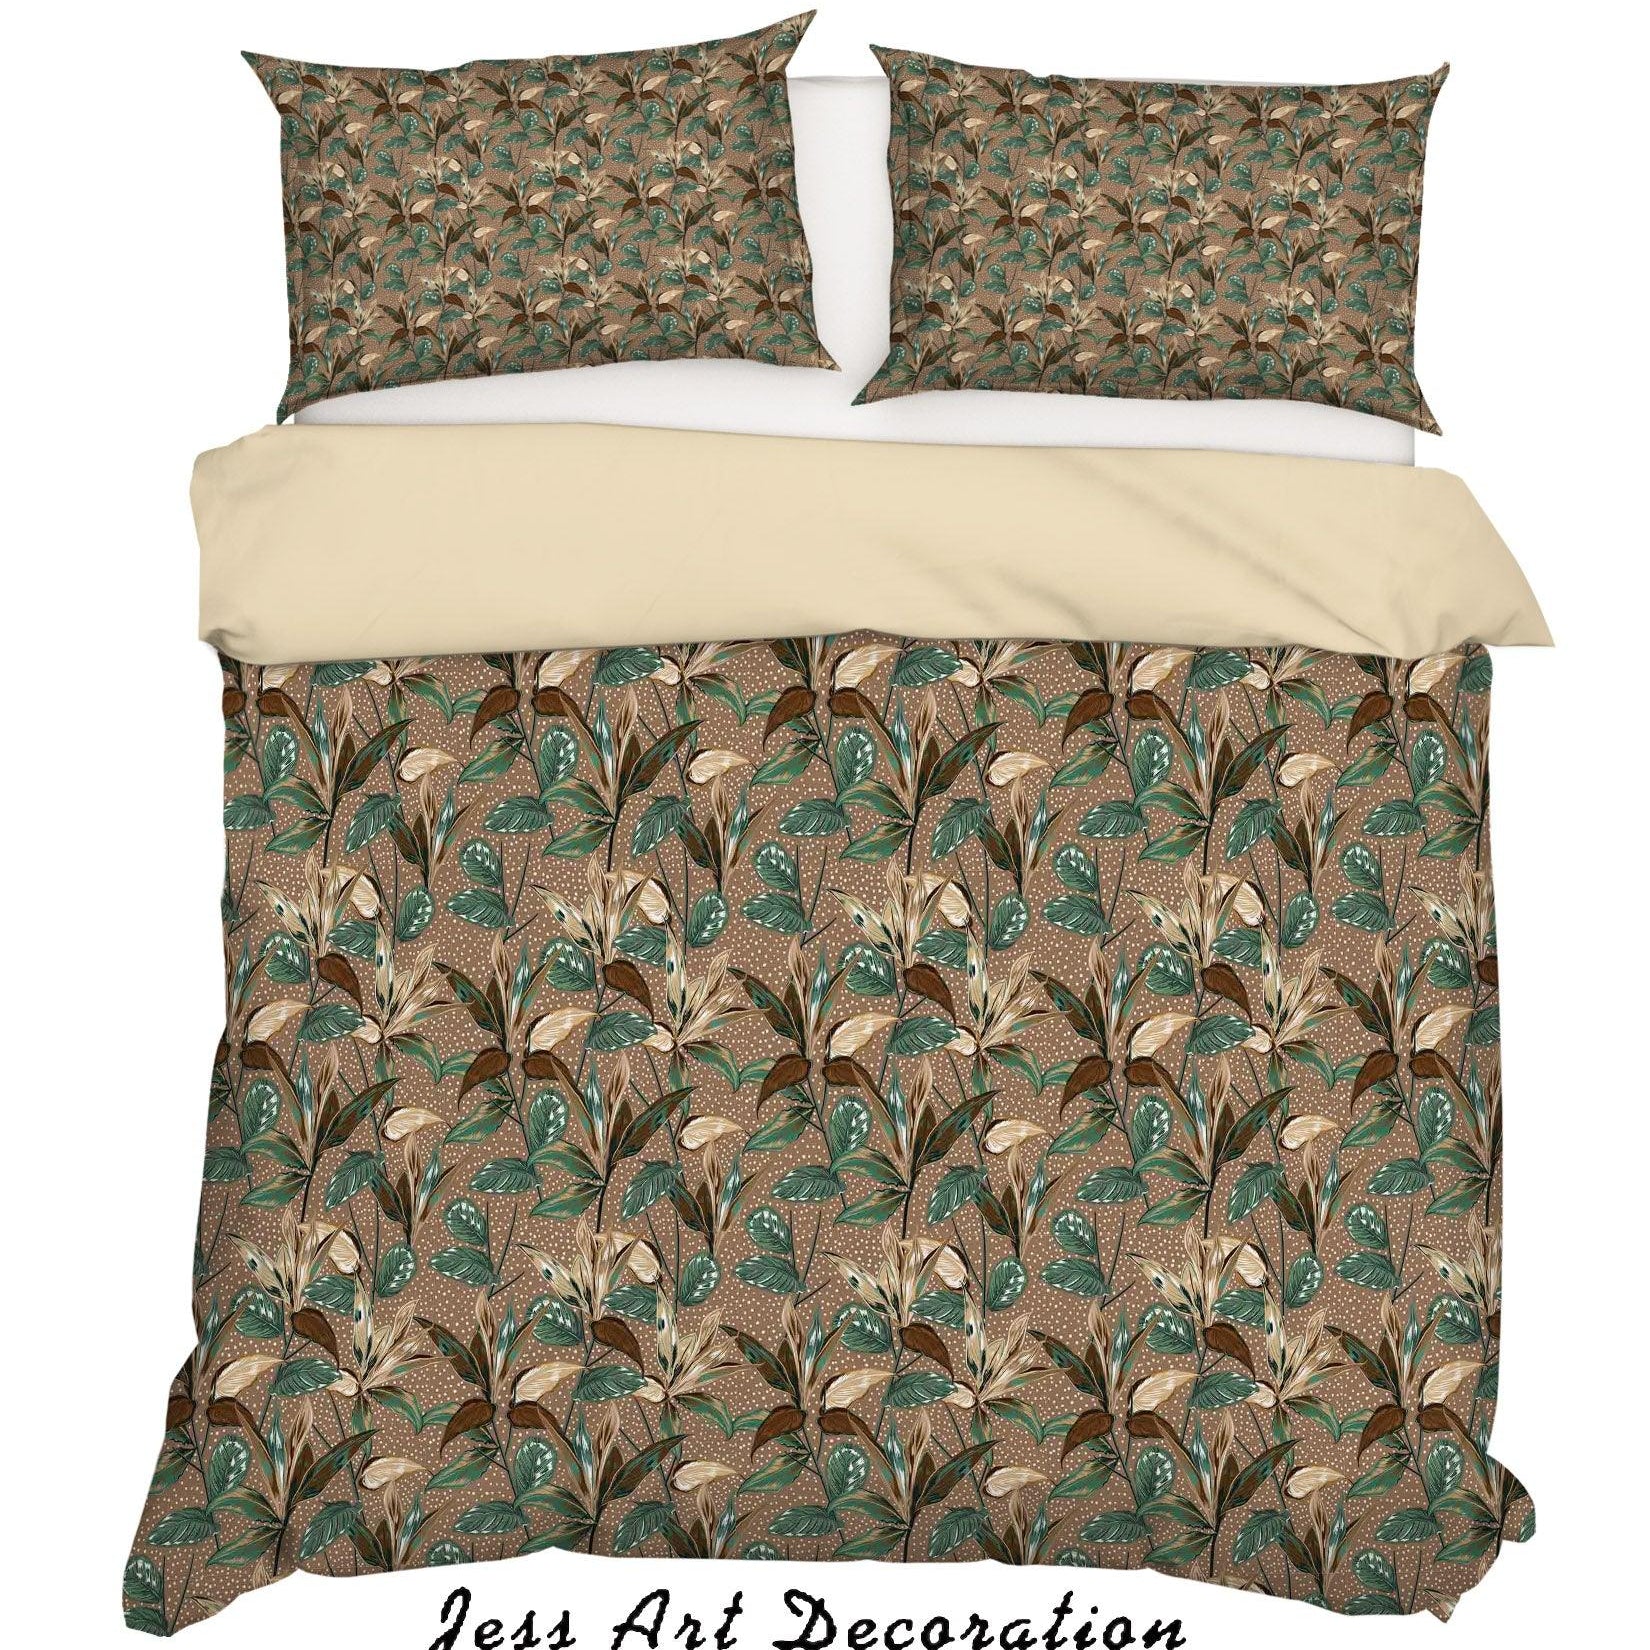 3D Vintage Leaves Floral Pattern Quilt Cover Set Bedding Set Duvet Cover Pillowcases WJ 6887- Jess Art Decoration